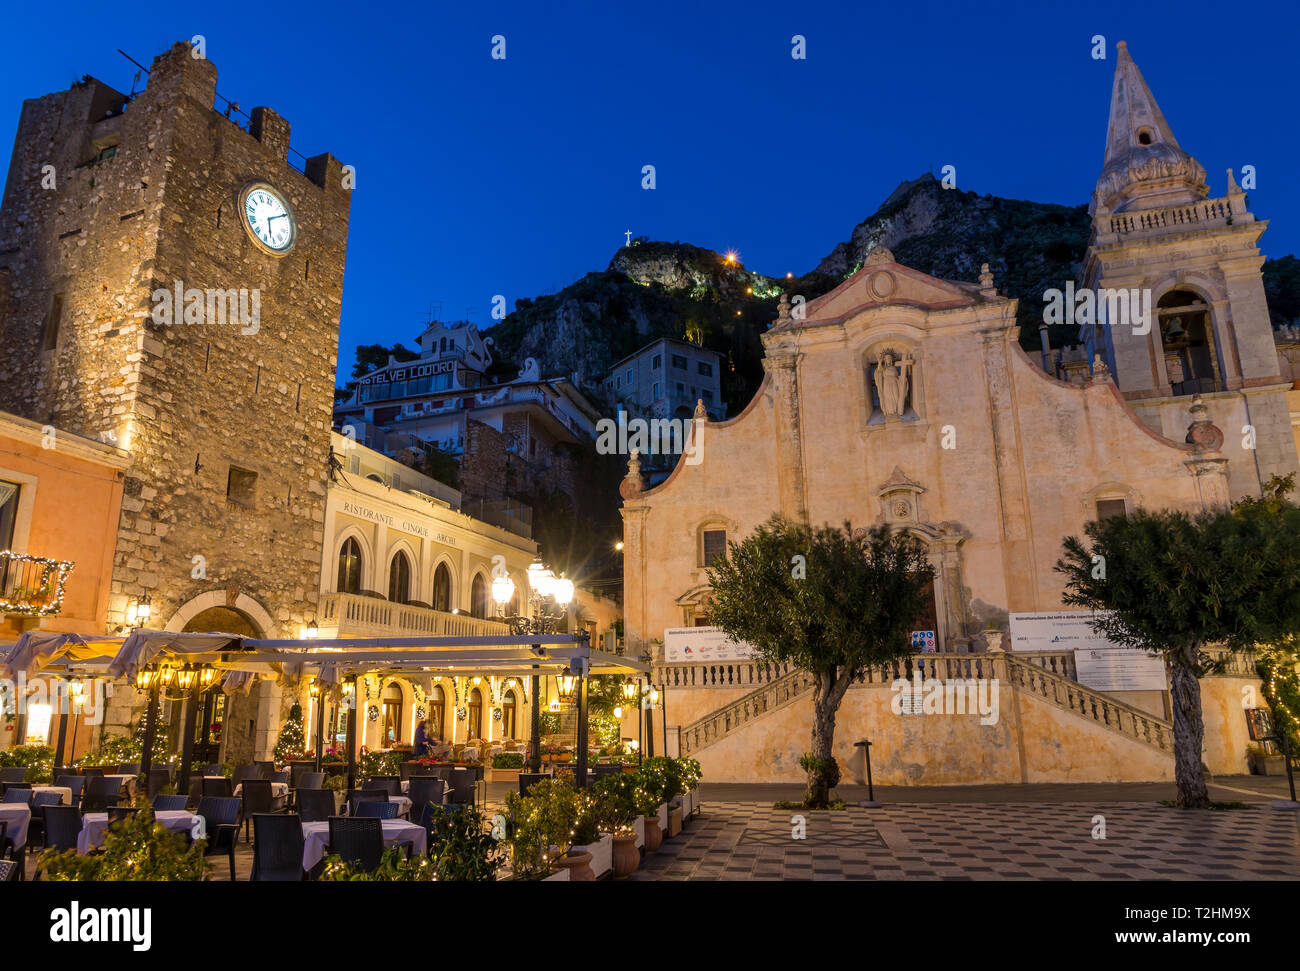 L'église de San Giuseppe et la tour de l'horloge porte à la Piazza IX Aprile pendant heure bleue, Taormina, Sicile, Italie, Europe Banque D'Images